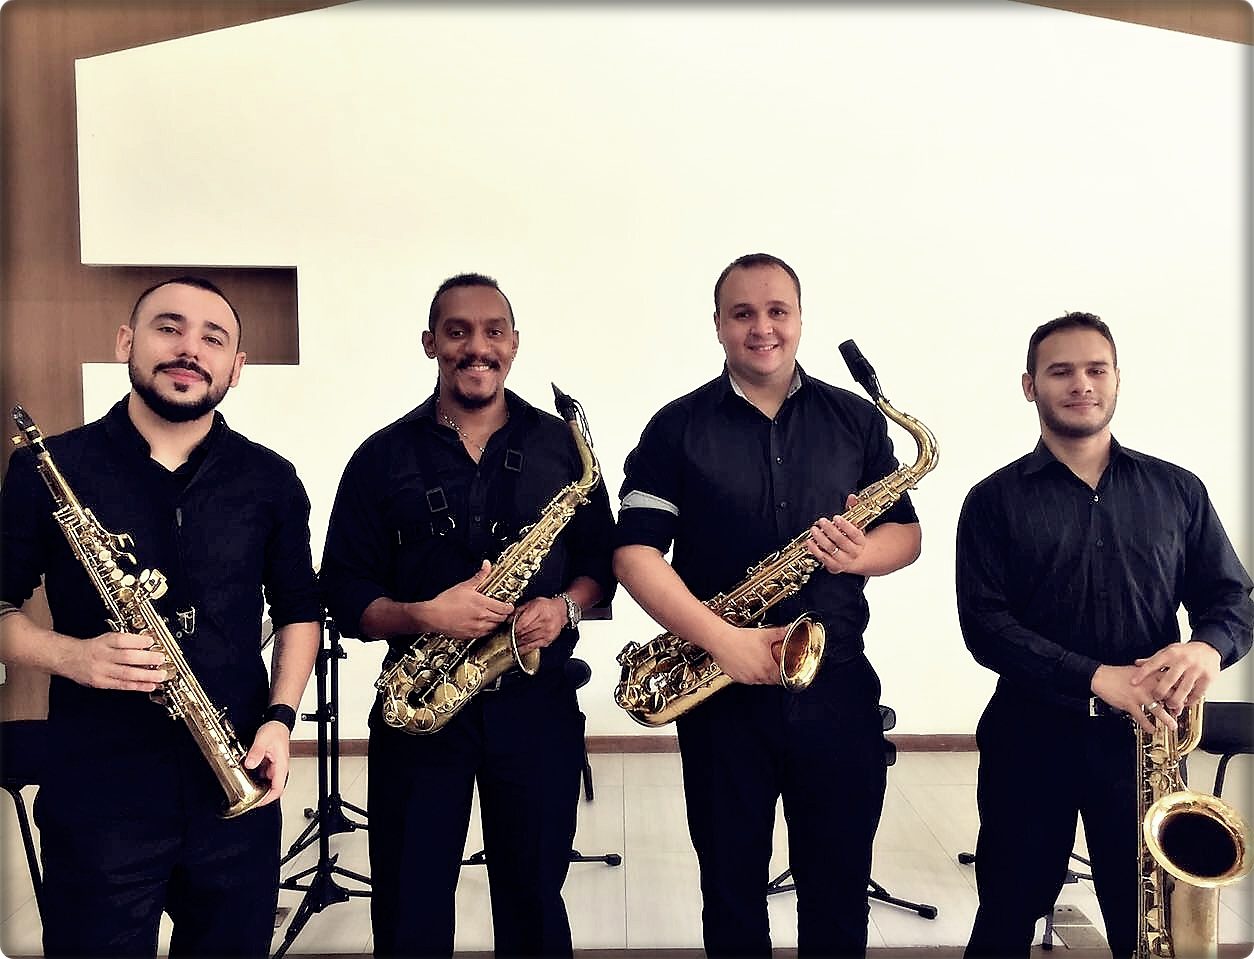 Projeto “Música é Cultura” tem apresentação quarteto de saxofones “Ars”